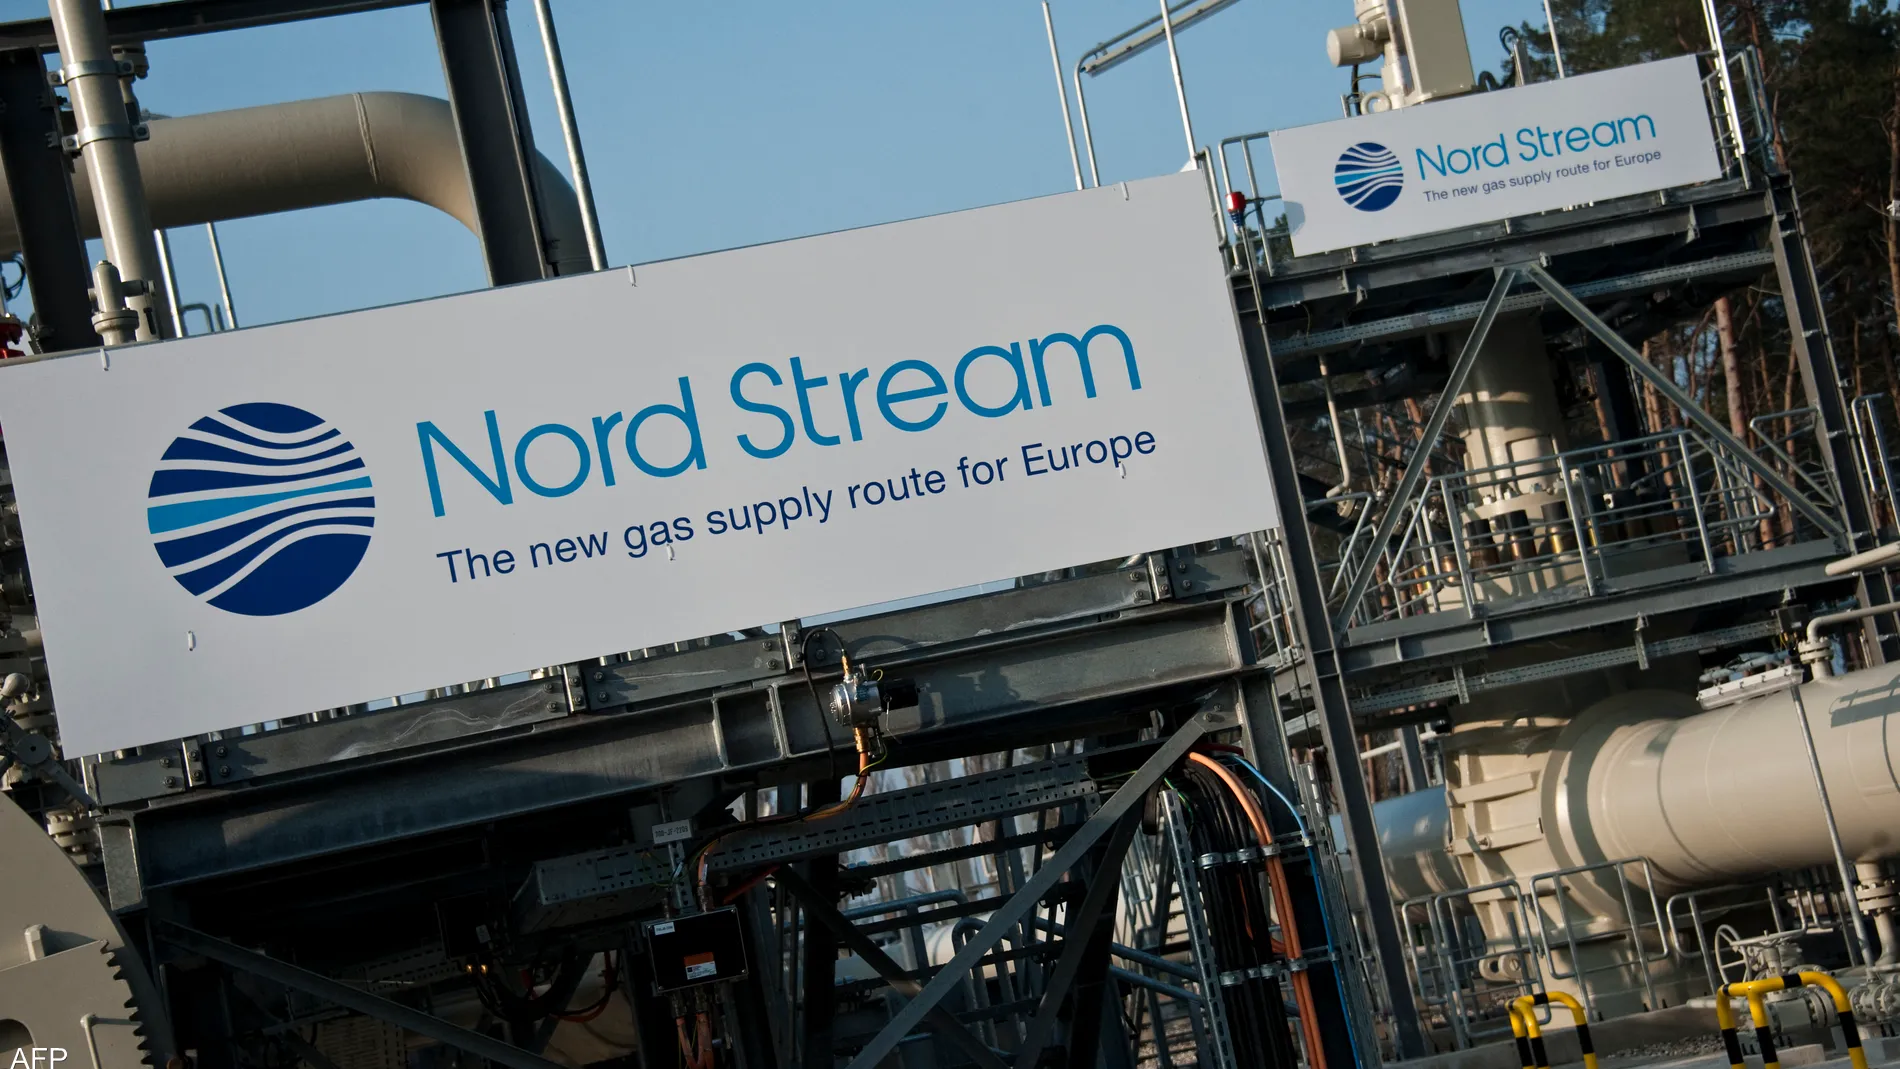 “غازبروم” الروسية توقف إمدادات الغاز الطبيعي إلى لاتفيا